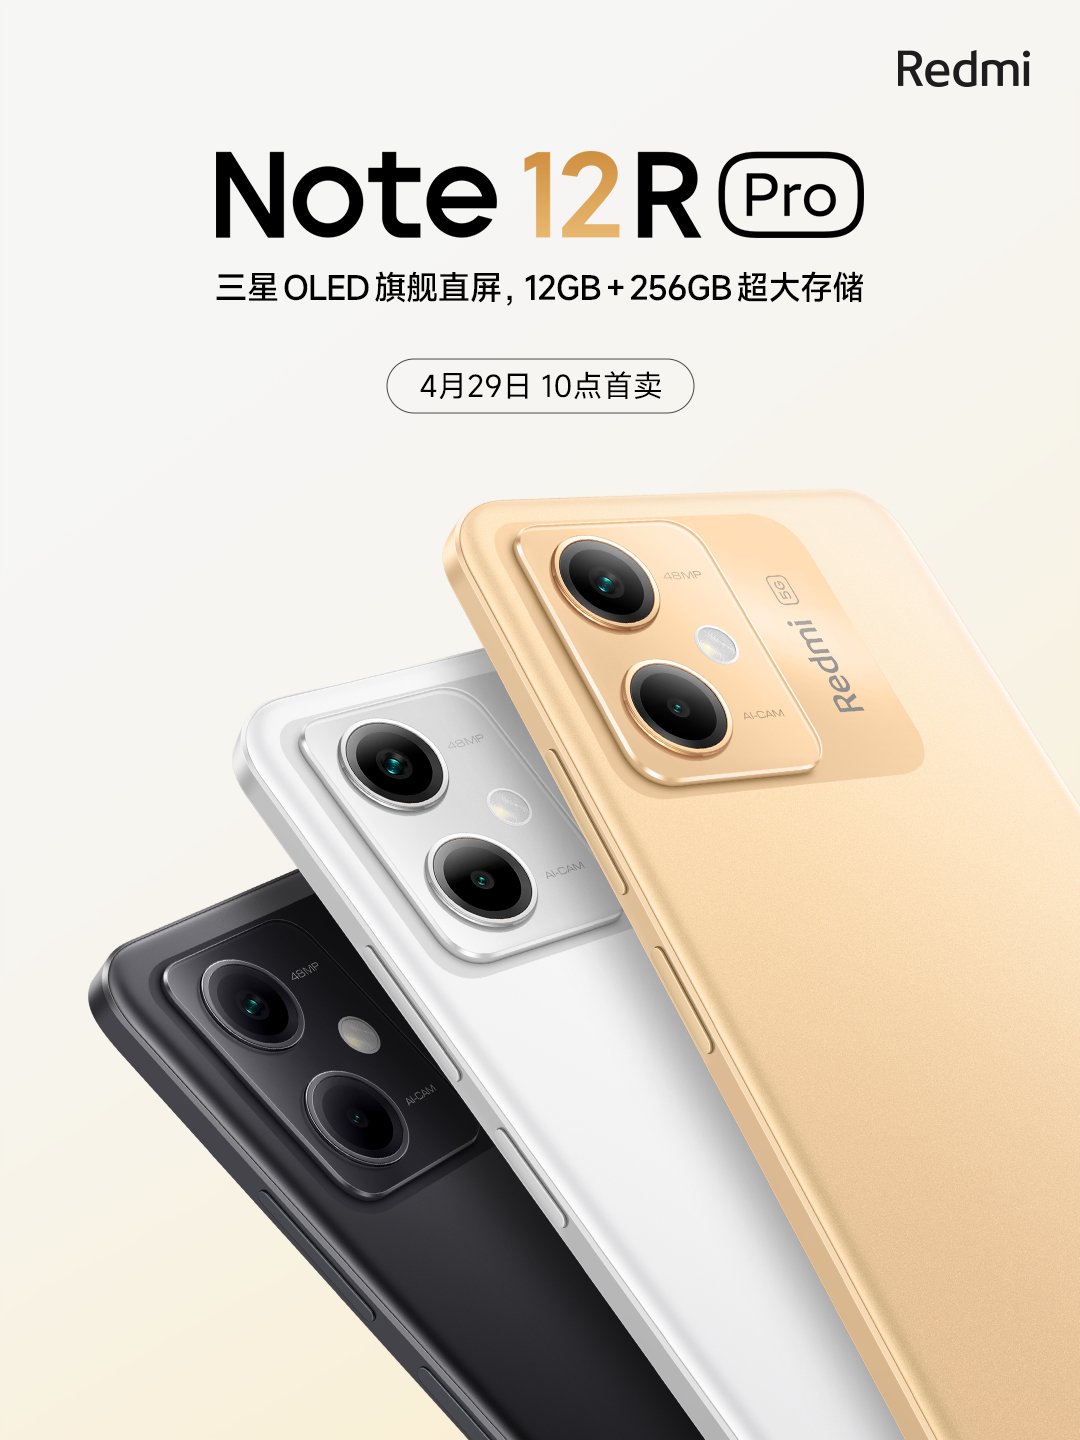 Redmi Note 12R Pro tanıtım tarihi belli oldu